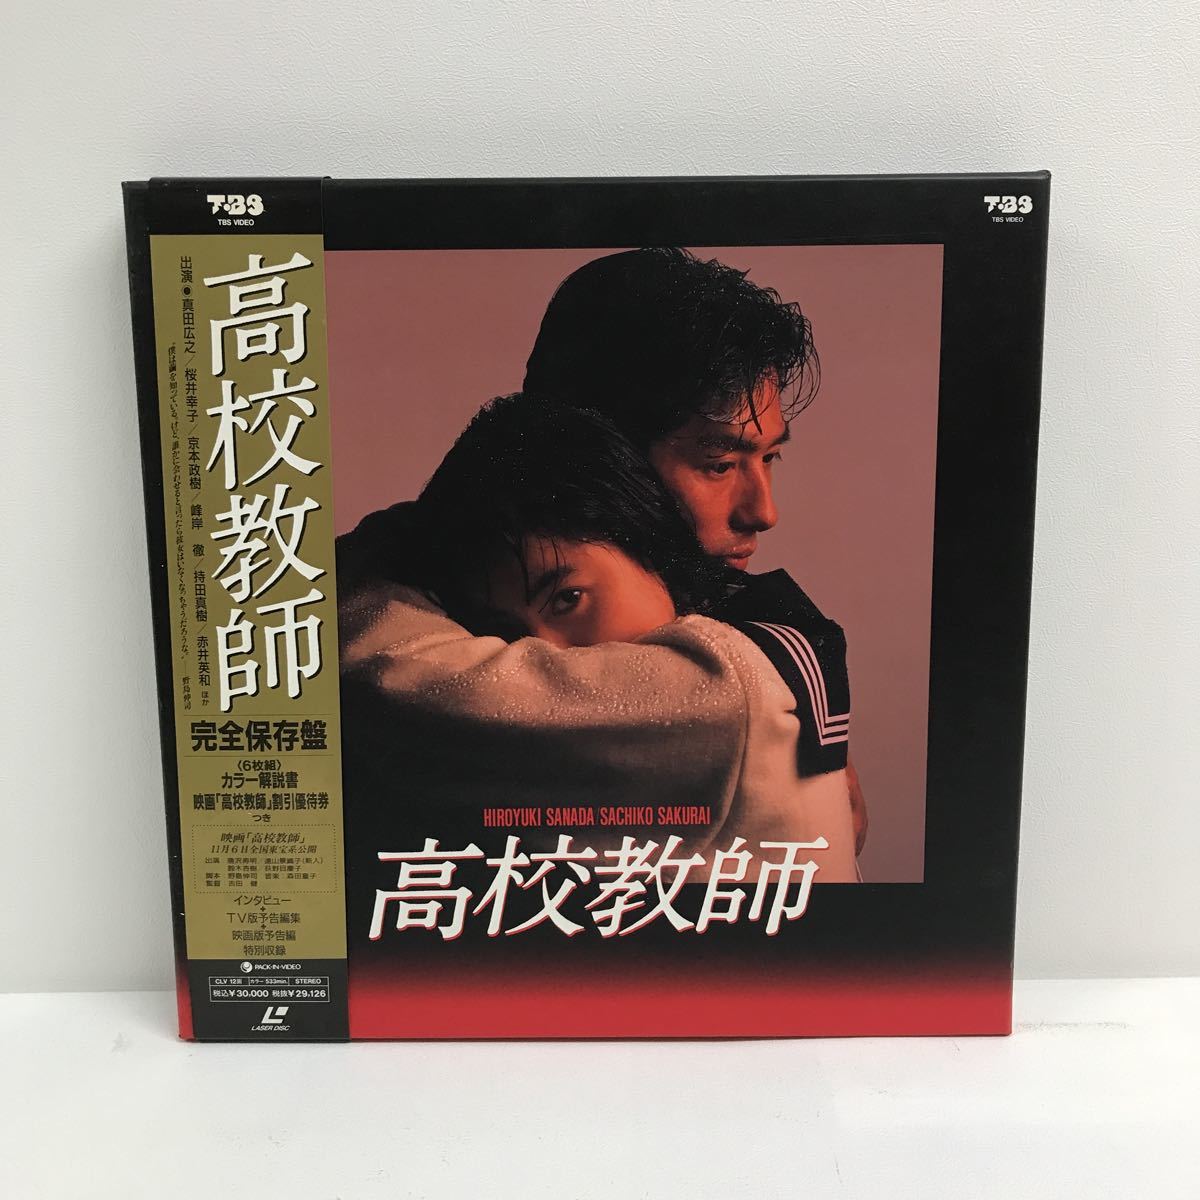 高校教師DVD-BOX4枚組 桜井幸子 真田広之 セル版・中古品、再生確認 